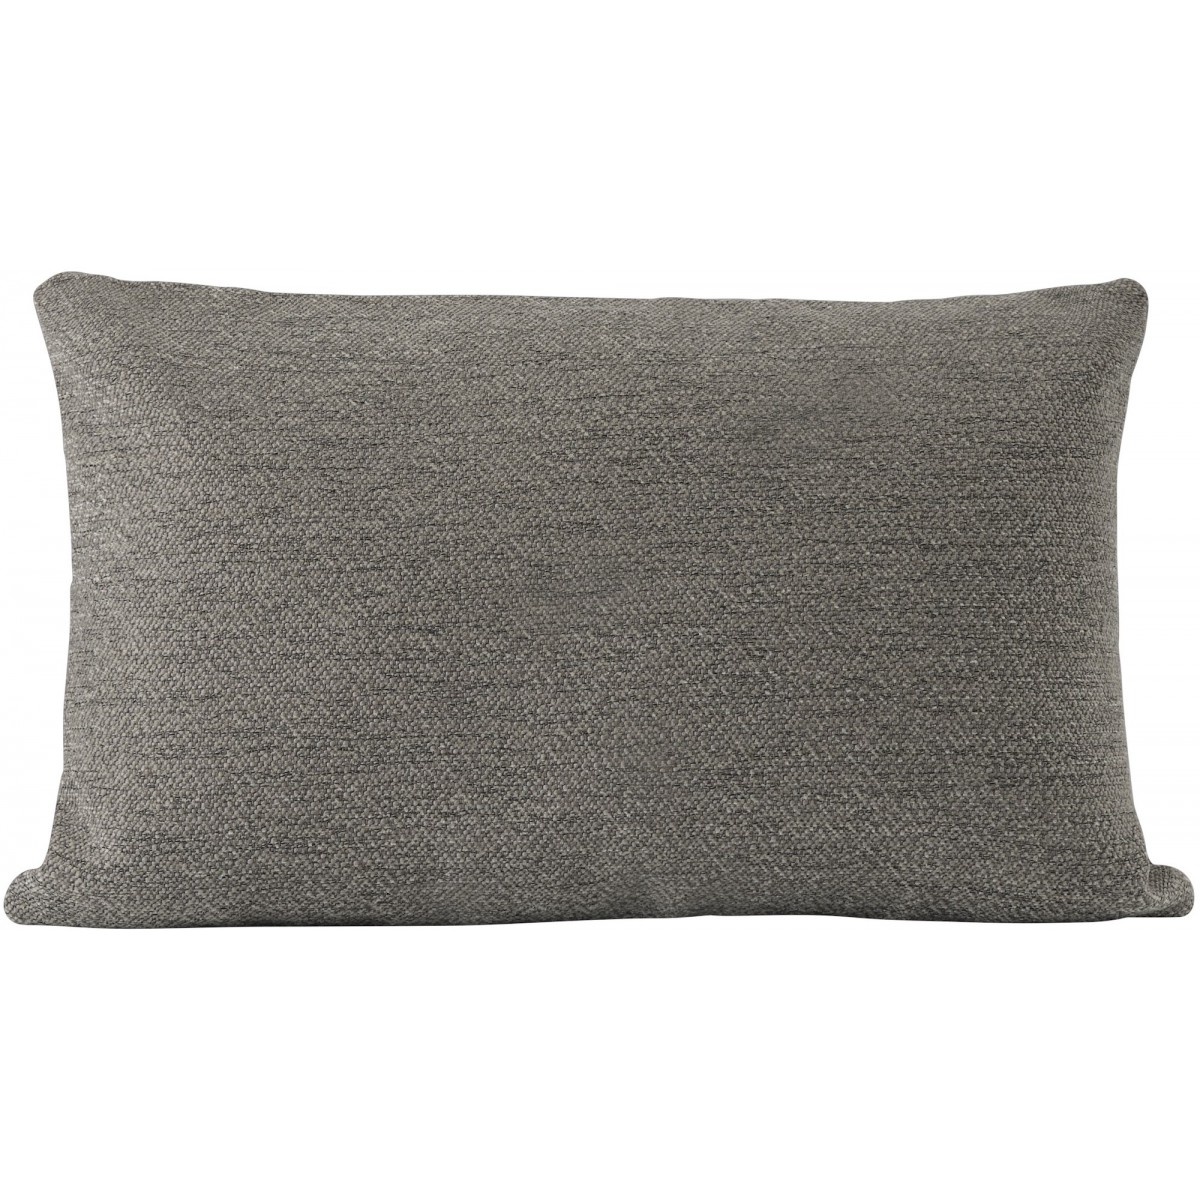 Taupe – 35 x 55 cm – Mingle cushion